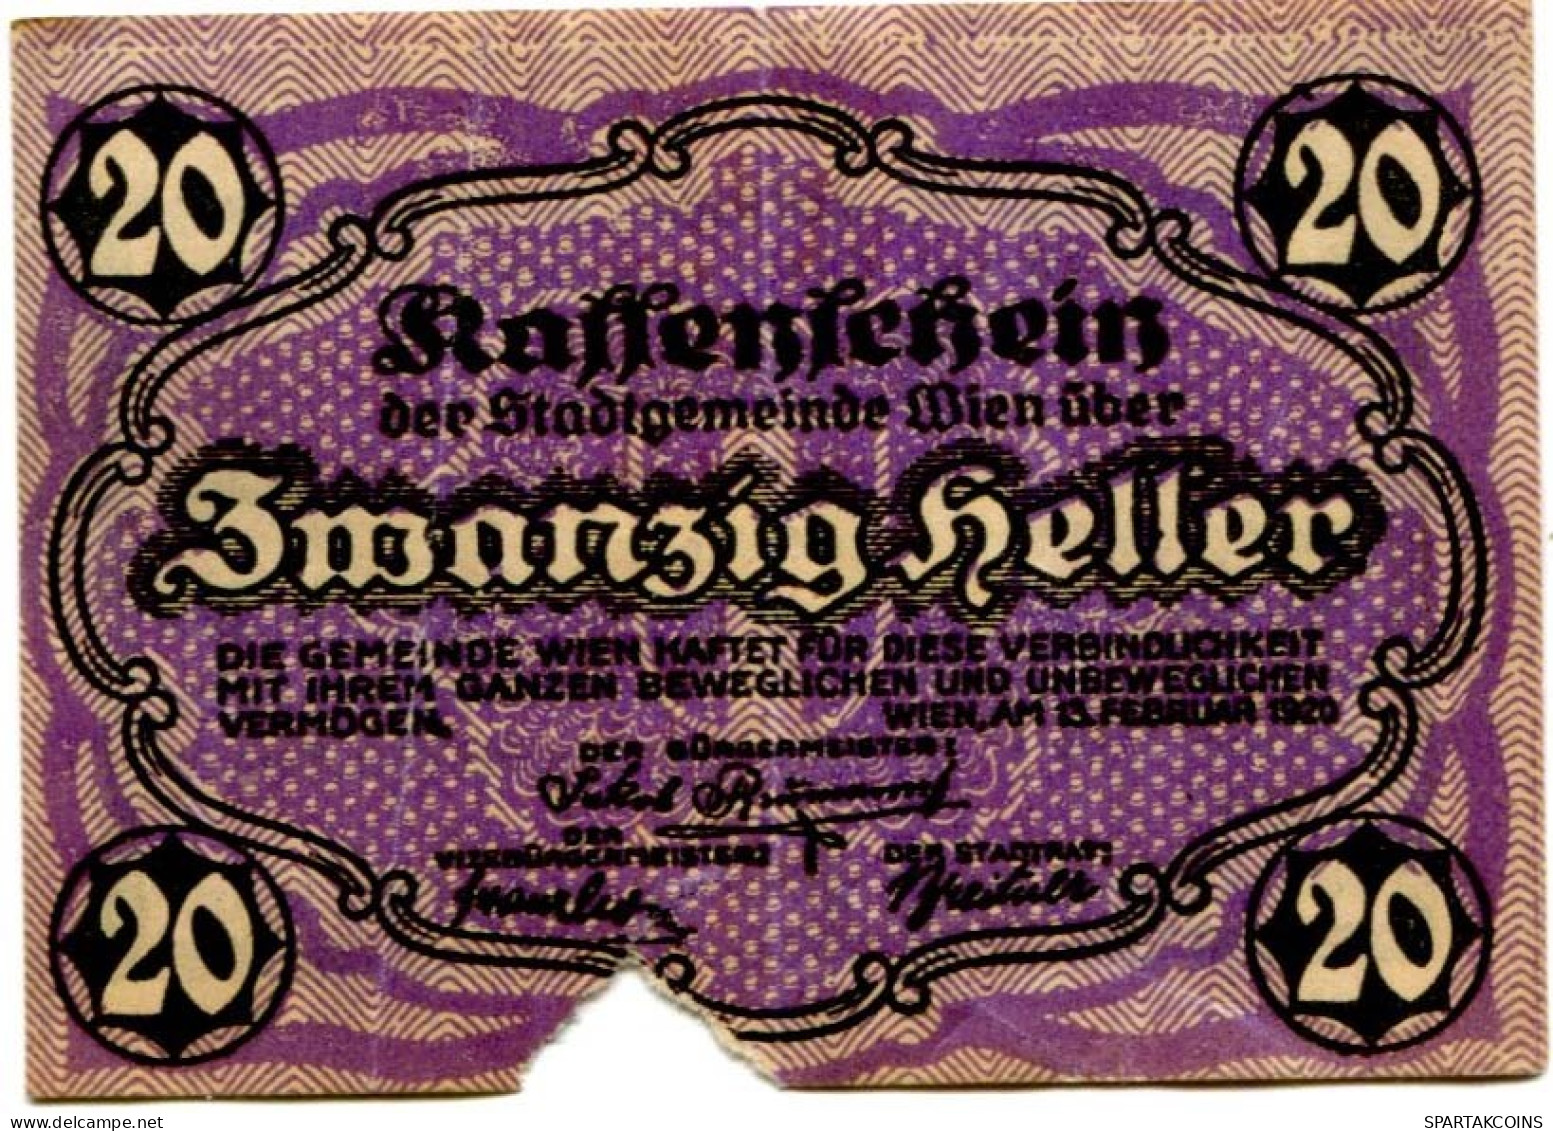 20 HELLER 1920 Stadt Wien Österreich Notgeld Papiergeld Banknote #PL569 - [11] Local Banknote Issues